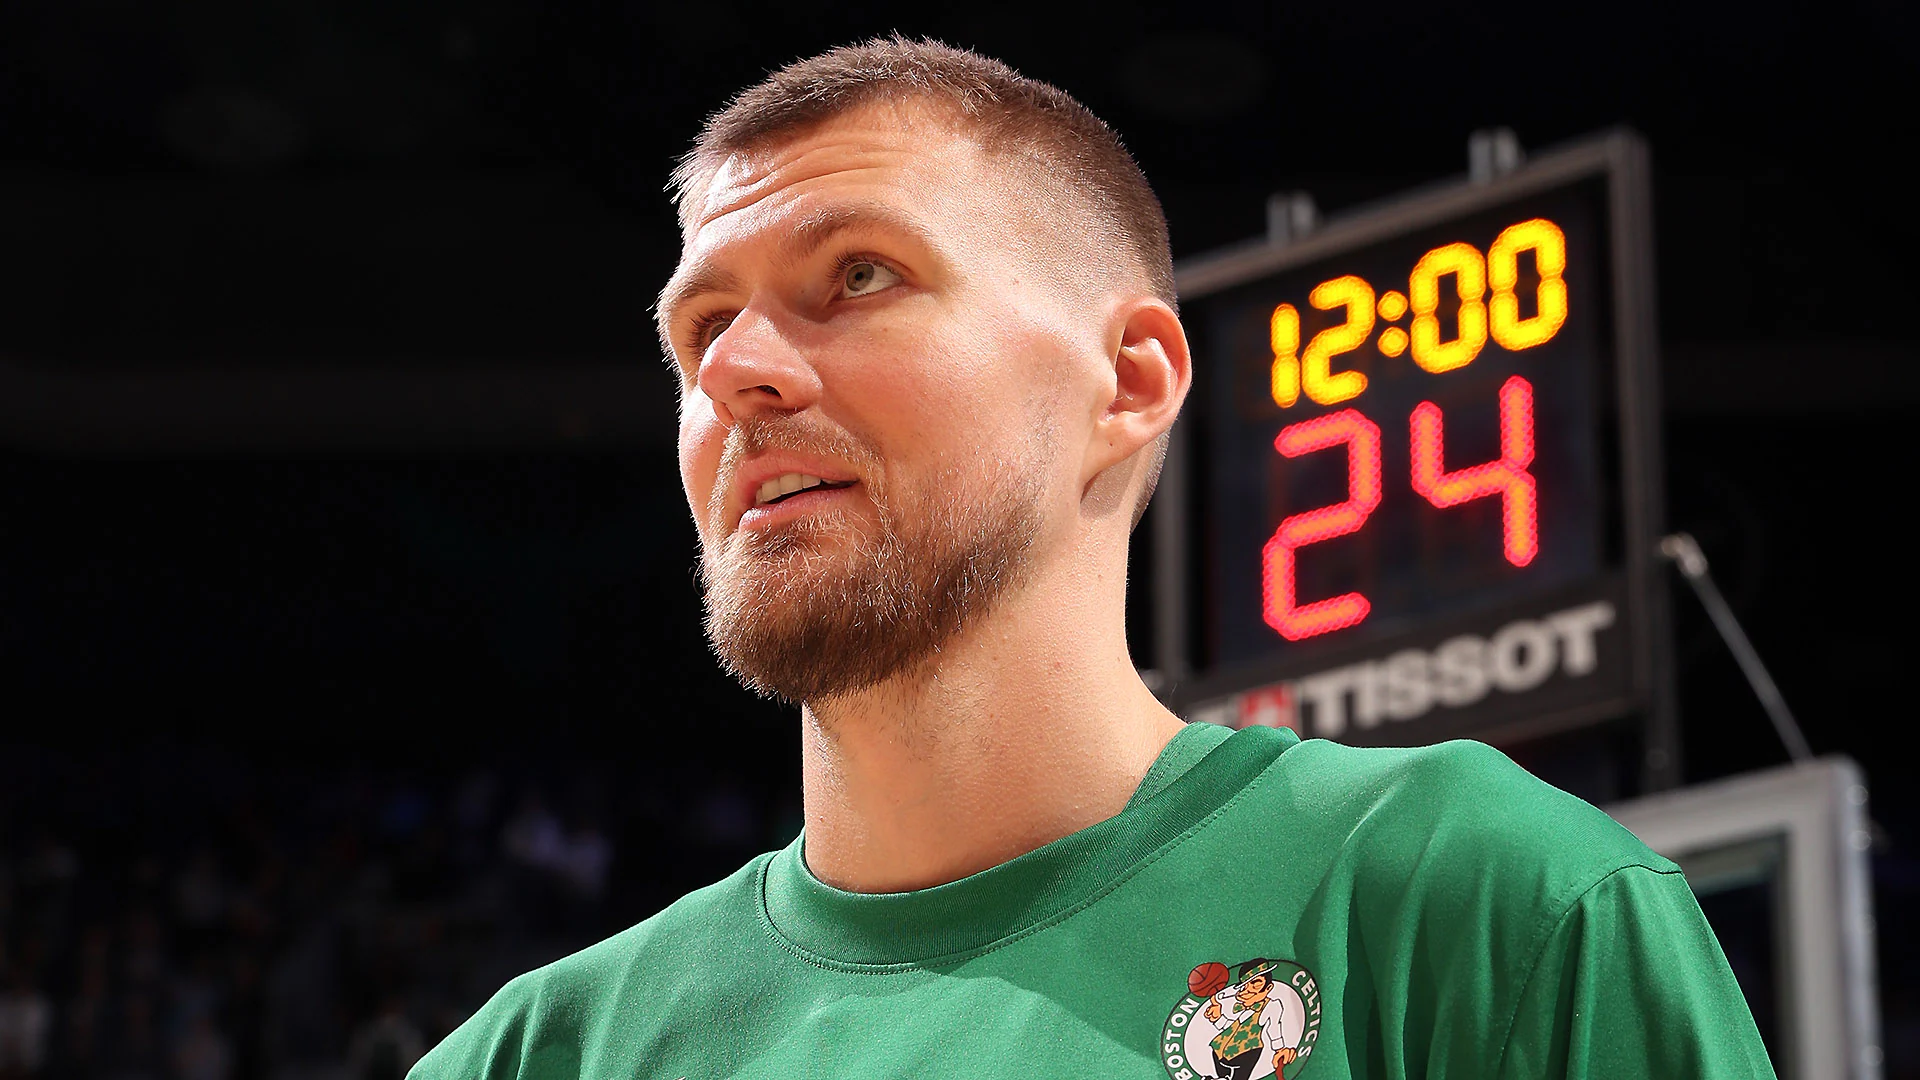 Kristaps Porzingis Returns for Celtics in NBA Finals Game 1 Against Mavericks